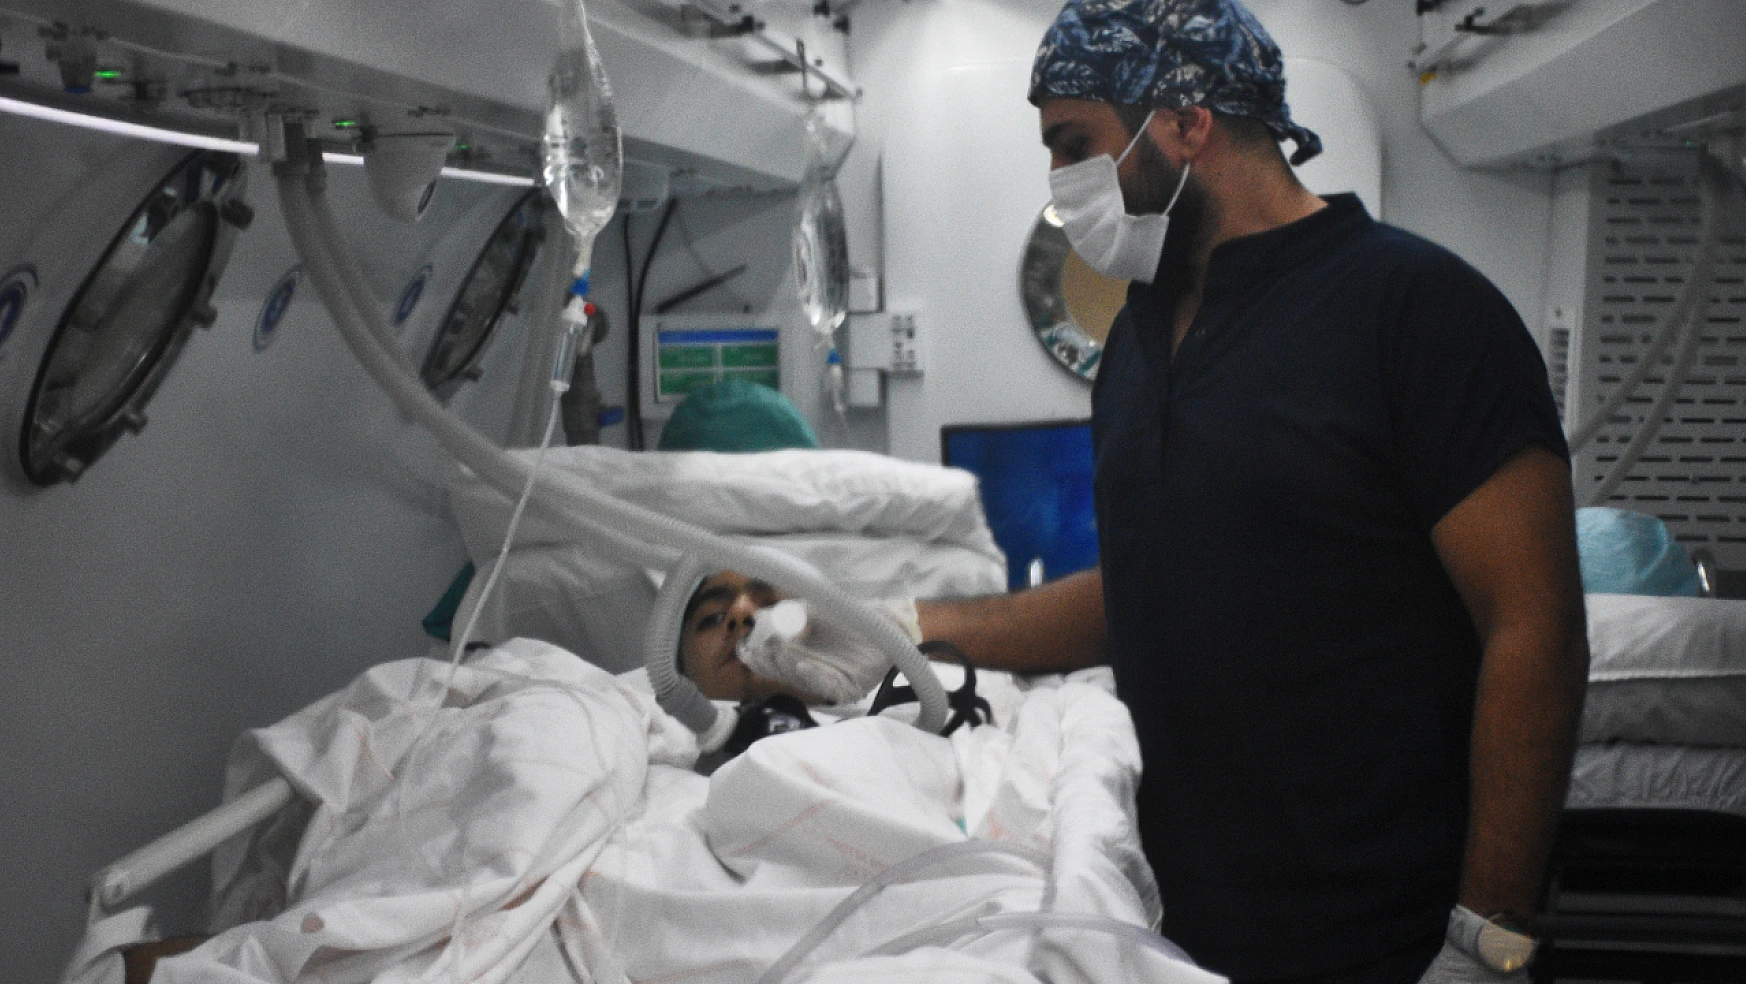 Konya'da tedavi altına alındı bacağının kesilmesinden kurtuldu